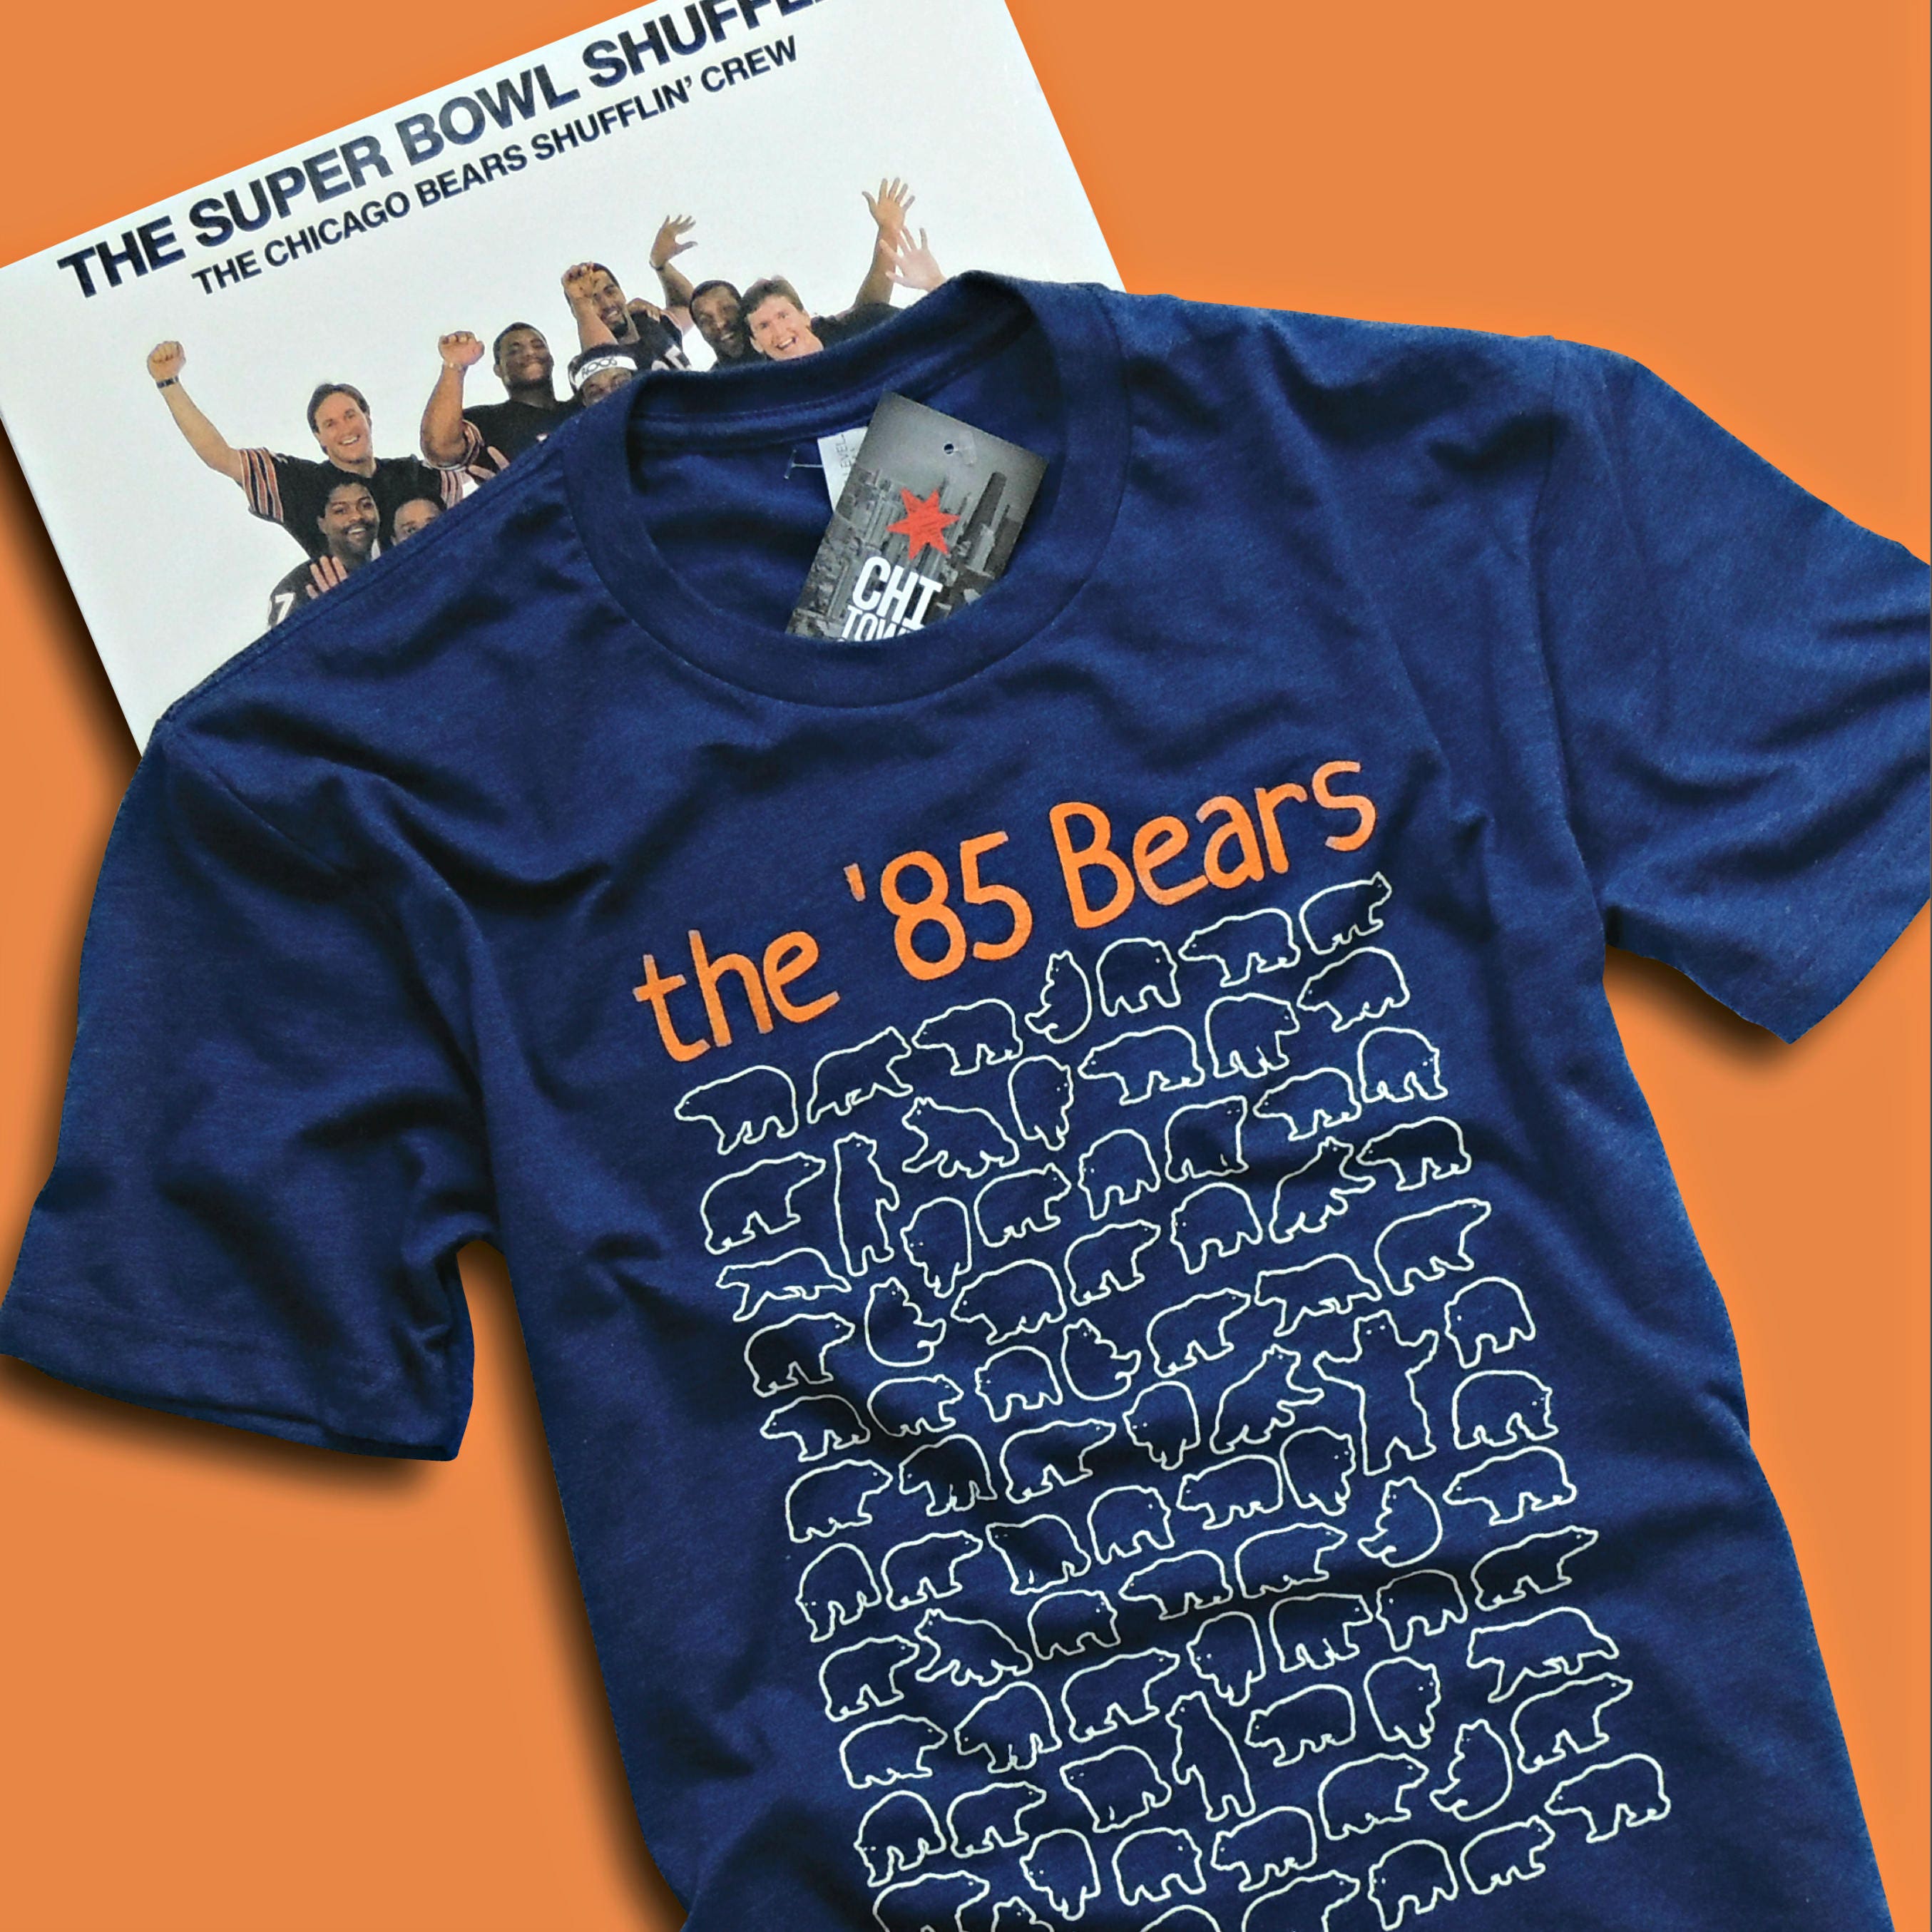 Unique 85 Chicago Bears T-shirt 